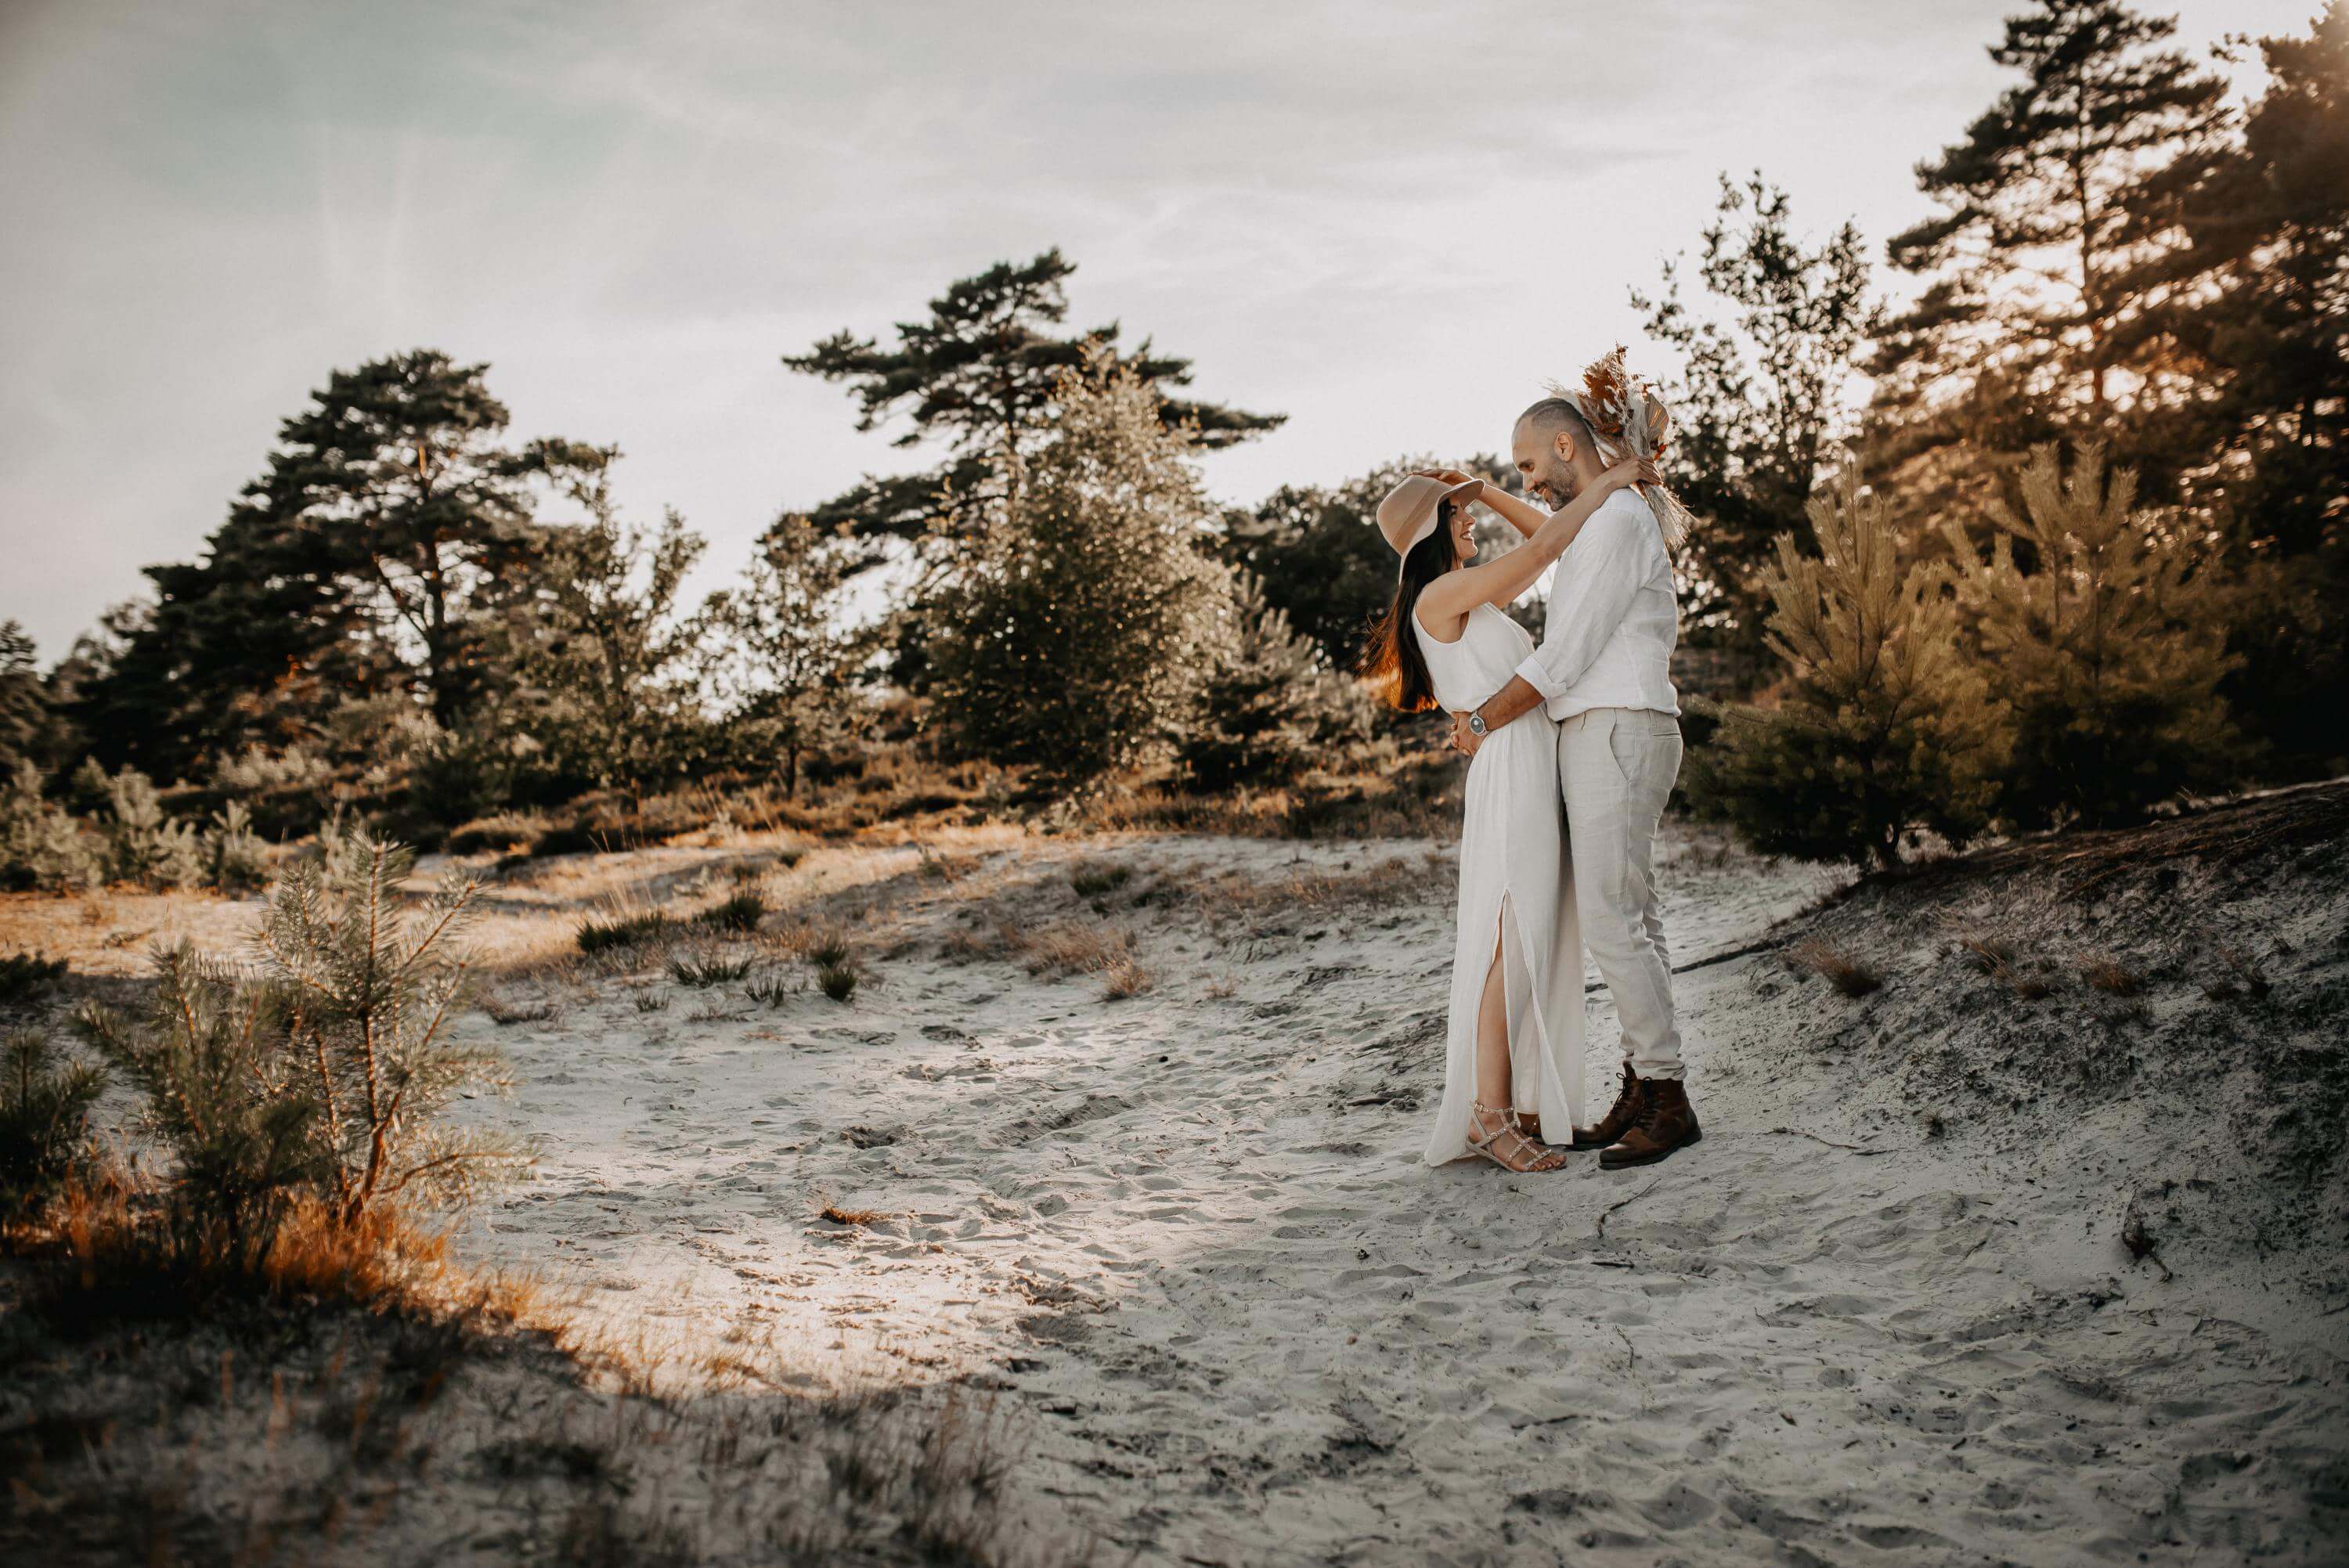 Ein Liebespaar steht mit hell-beiger Kleidung bei flach-stehender Sonne auf einer sandigen Düne in einer Heide-Landschaft. Beide umarmen sich und schauen sich in die Augen.